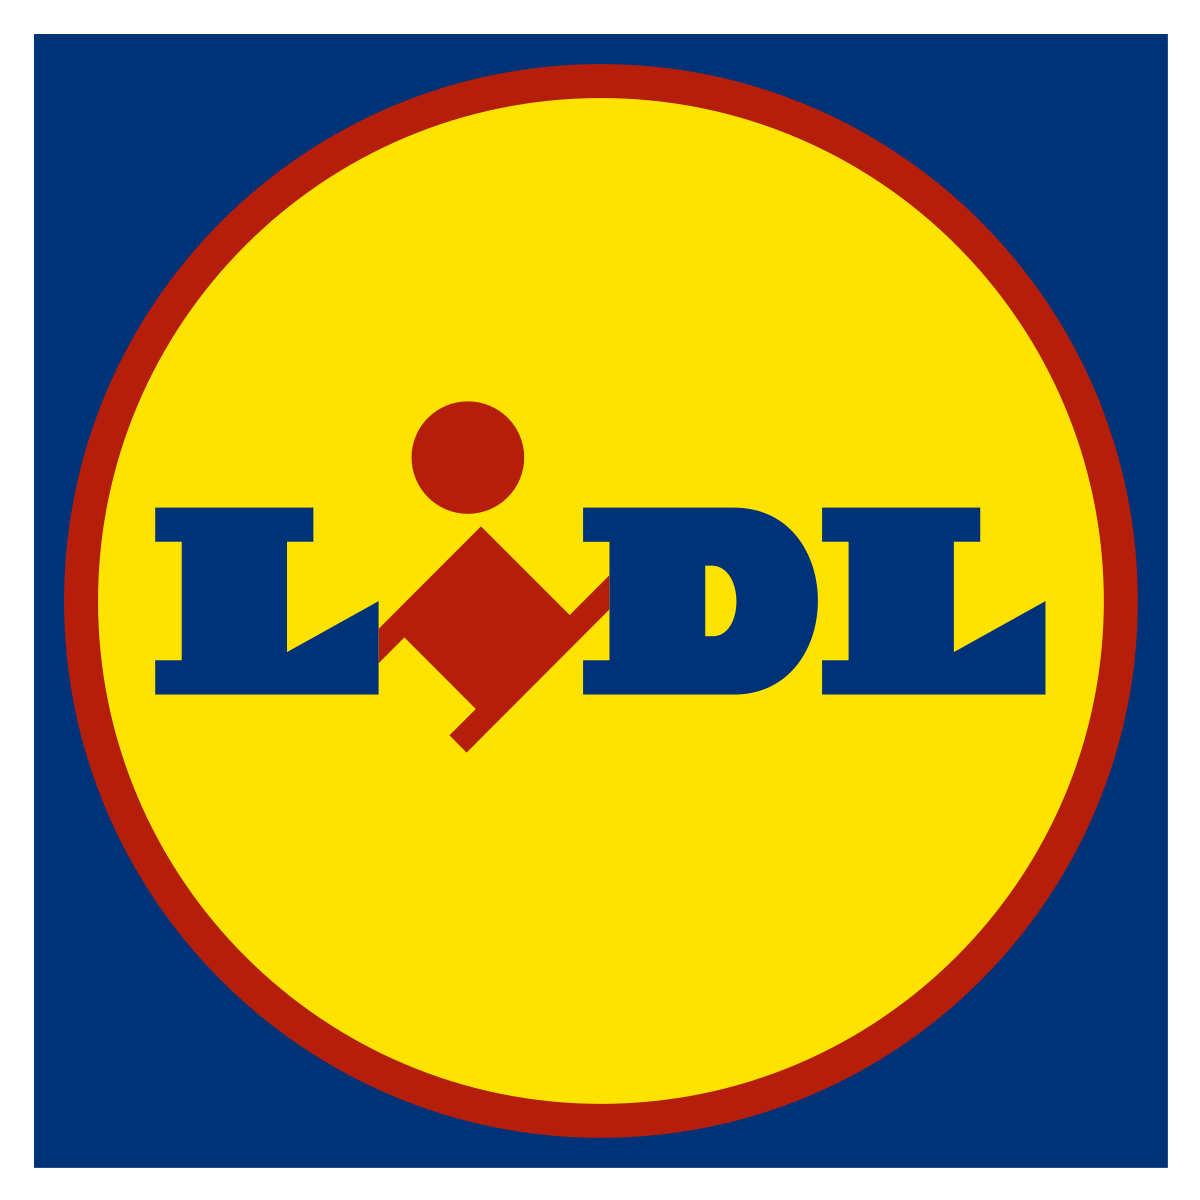 Lidl - Super Market Group